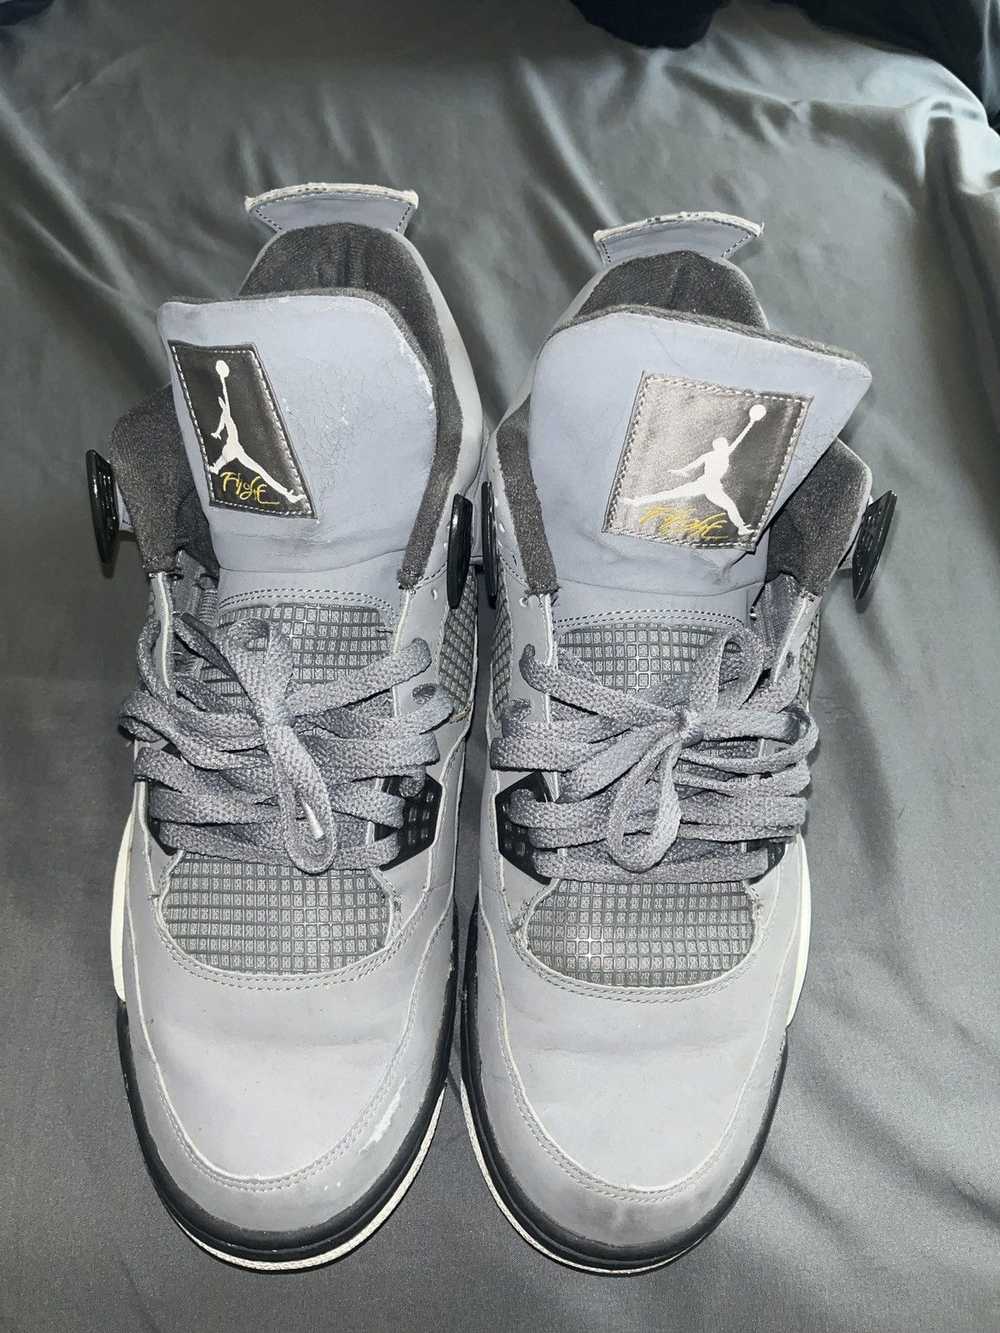 Jordan Brand × Nike Jordan Retro 4 Cool Grey 2004 - image 1